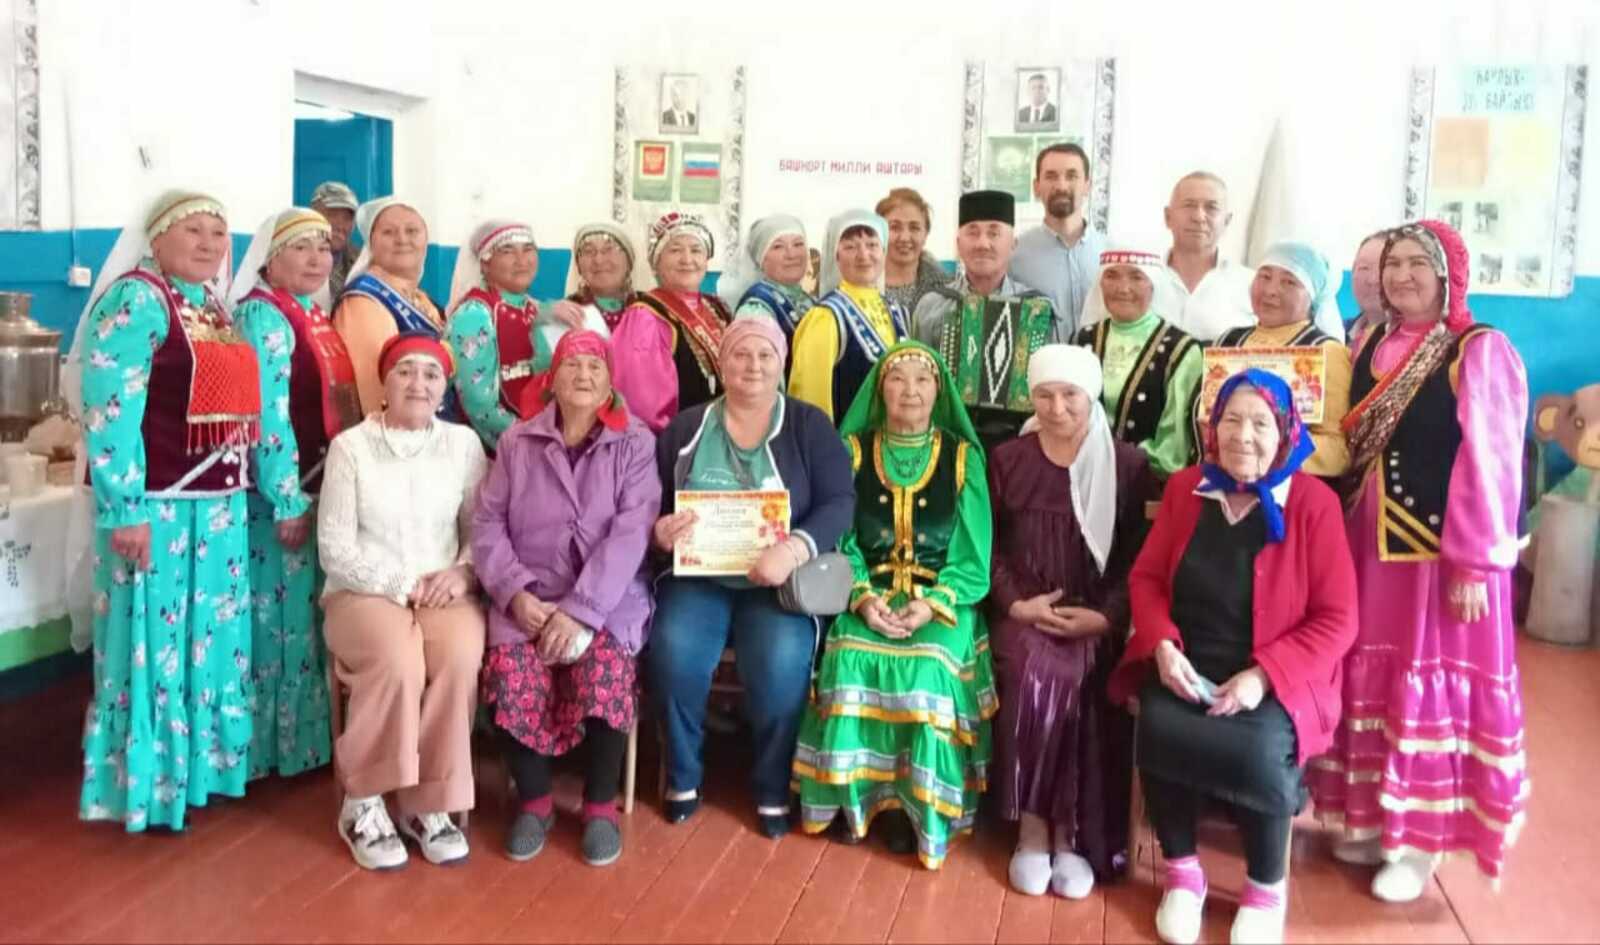 Фольклорная группа "Ташкын" провела в сельском клубе д. Муллакаево творческую встречу